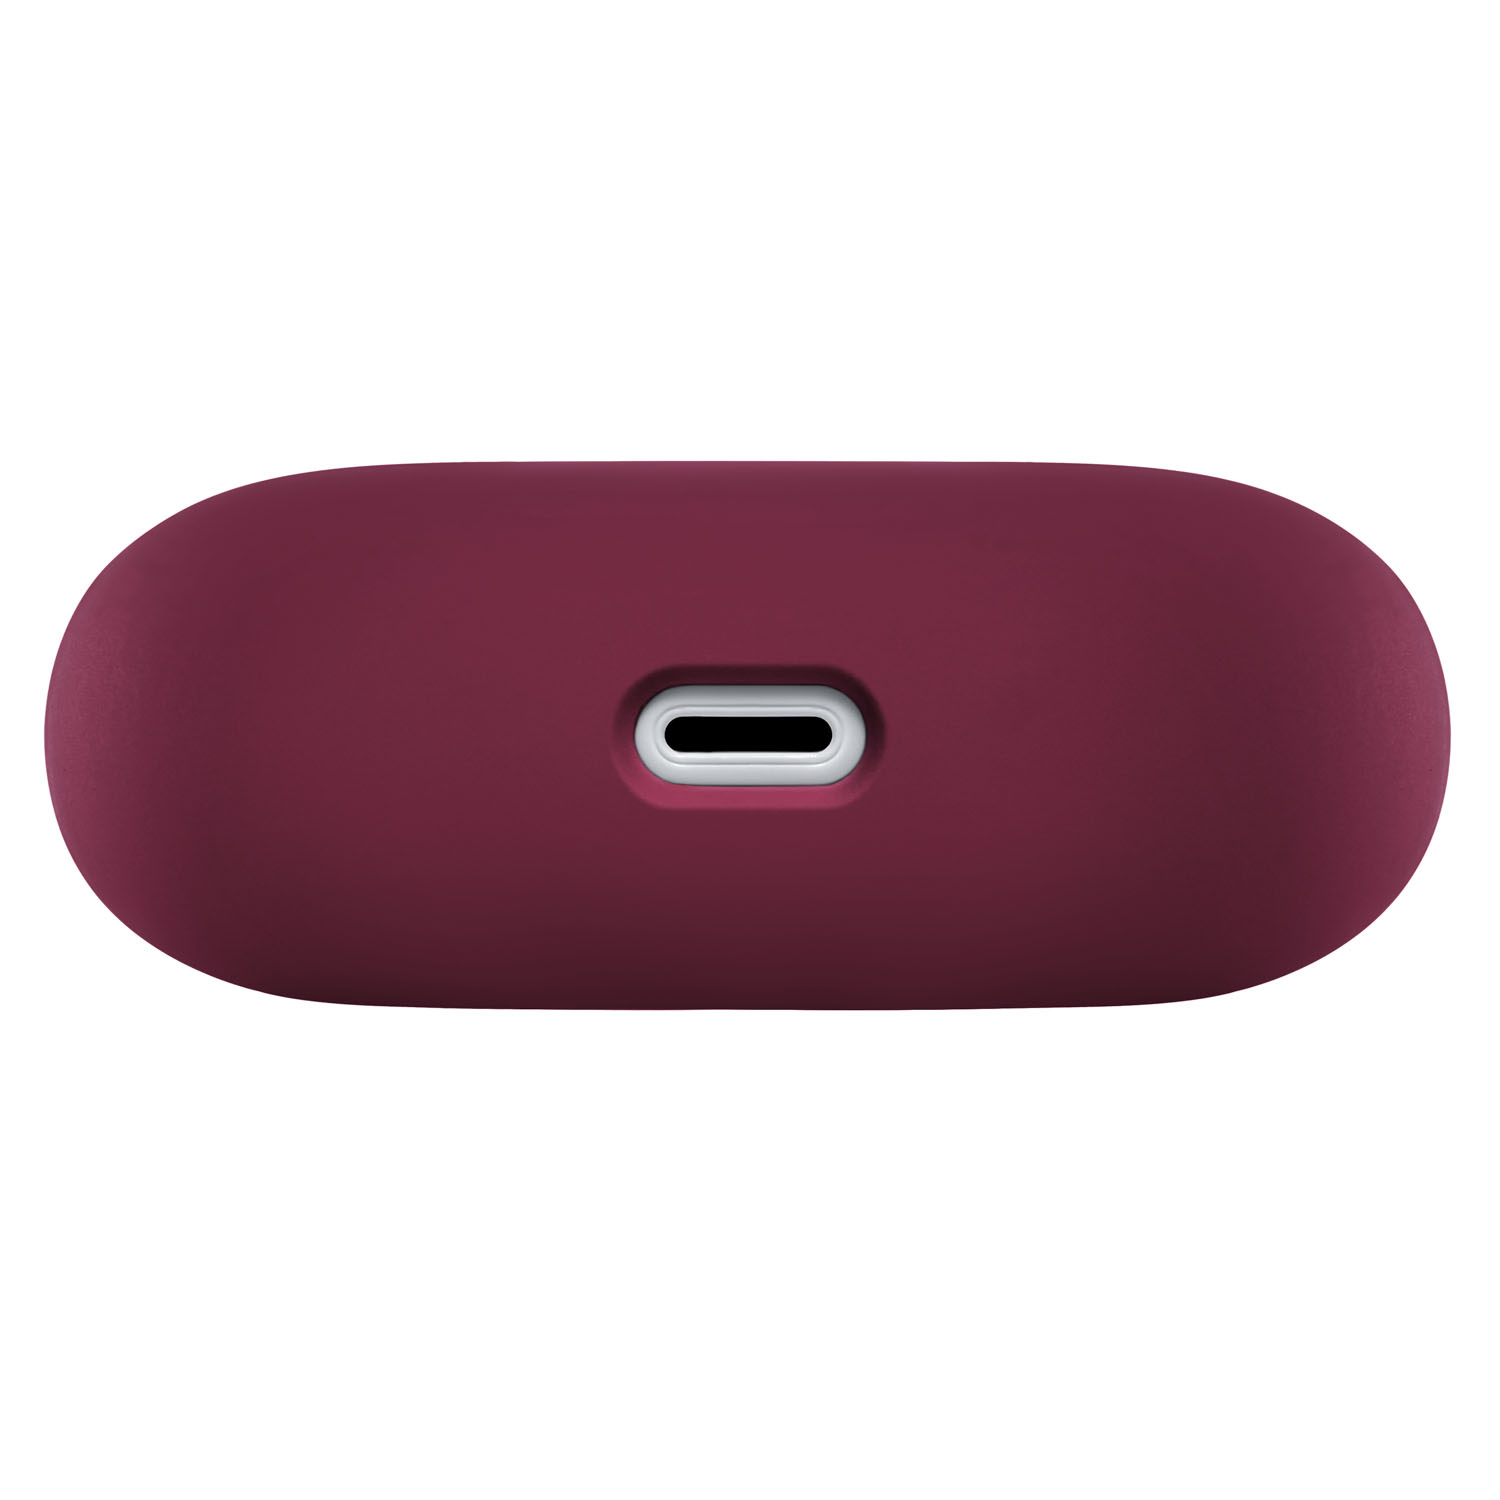 Защитный чехол Airpods Pro Touch Pro Silicone Case, 1,5 мм усиленный, фиолетовый